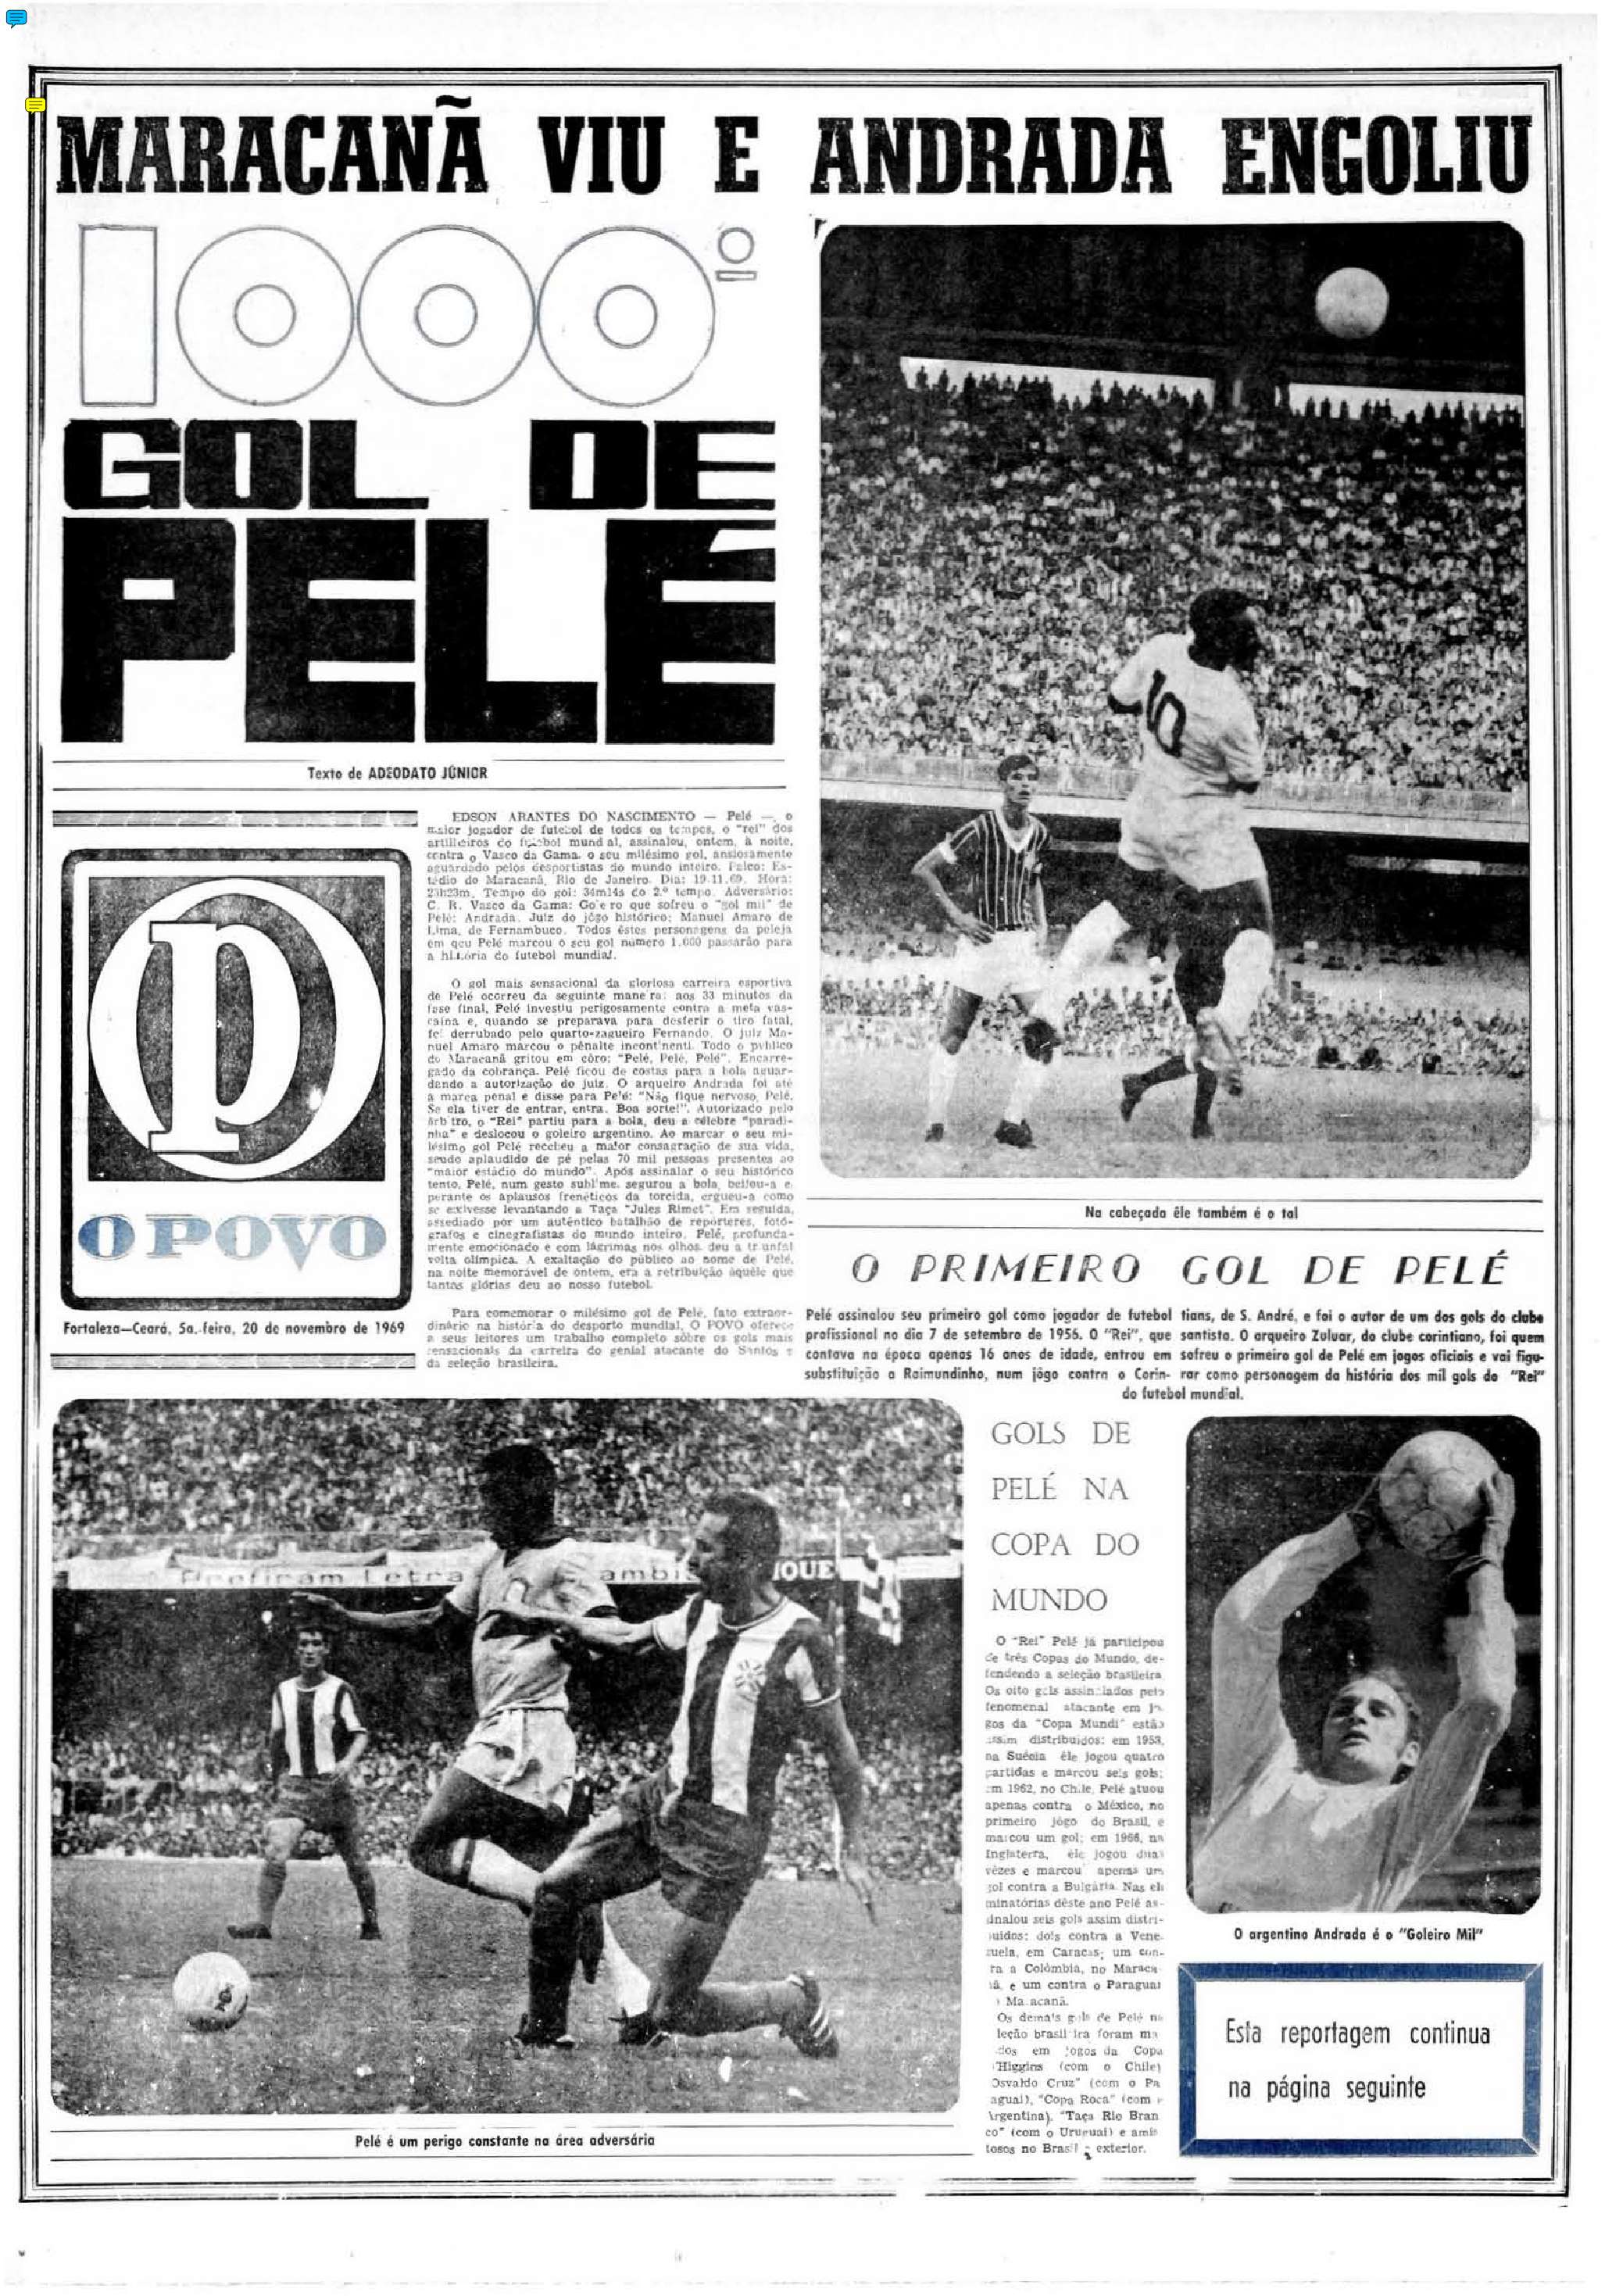 Pelé 80 anos: 20 de novembro de 1969 - Capa de caderno do O POVO sobre o gol mil de Pelé(Foto: Acervo O POVO)